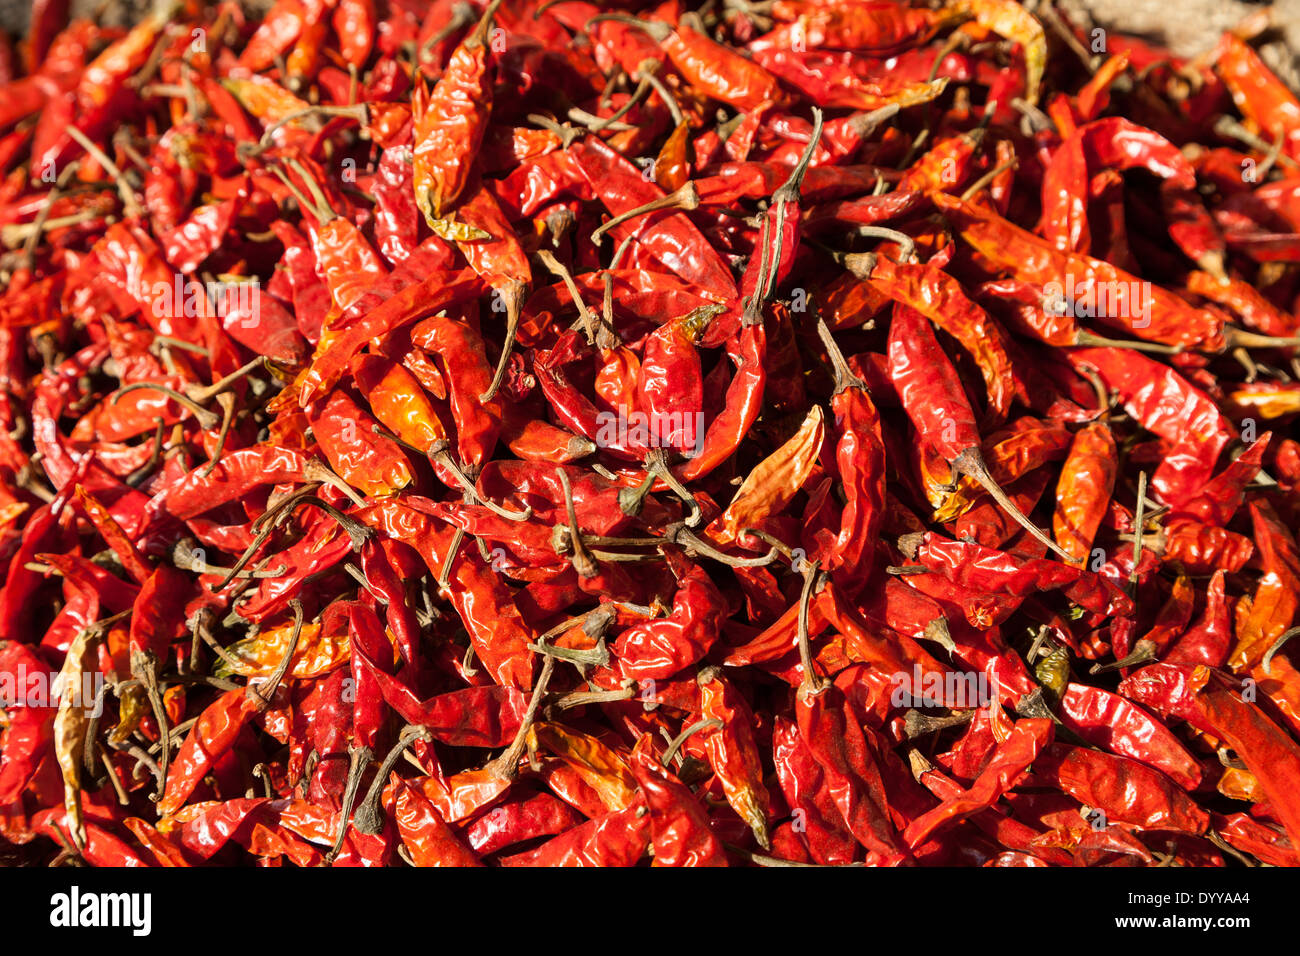 Neu-Delhi, Indien. Chili Peppers auf dem Markt. Stockfoto